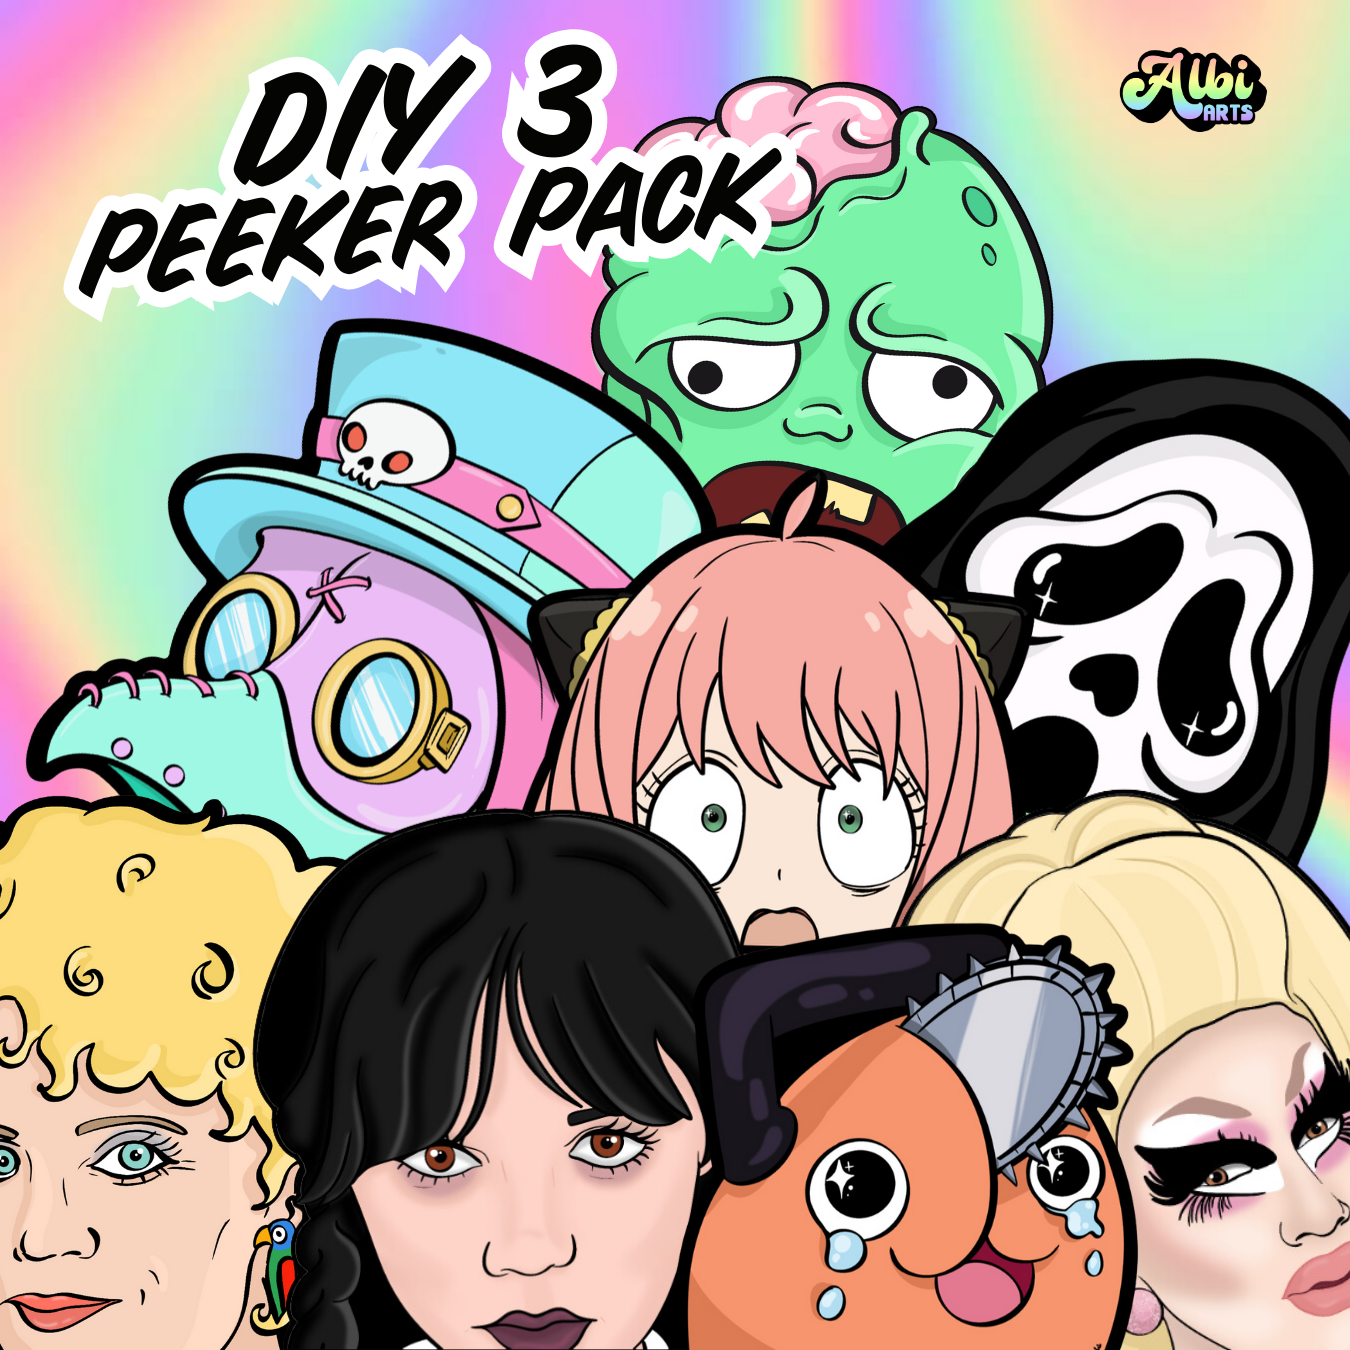 DIY 3 Peeker Pack